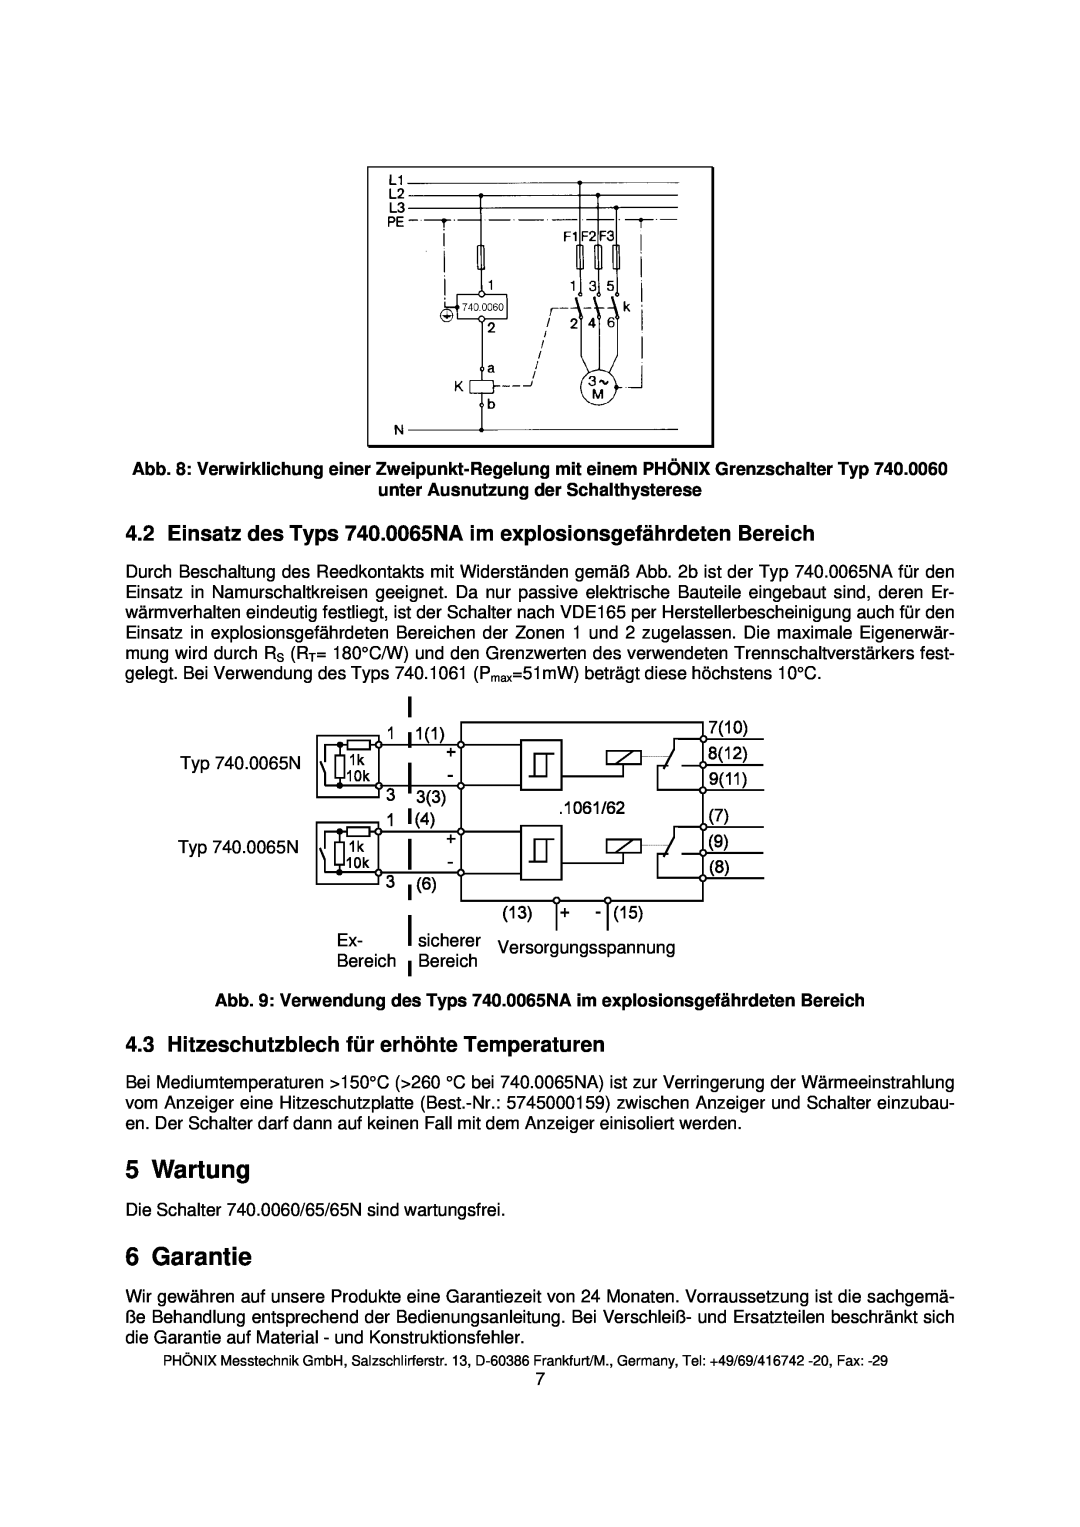 Euphonix instruction manual Wartung, Garantie, Einsatz des Typs 740.0065NA im explosionsgefährdeten Bereich 